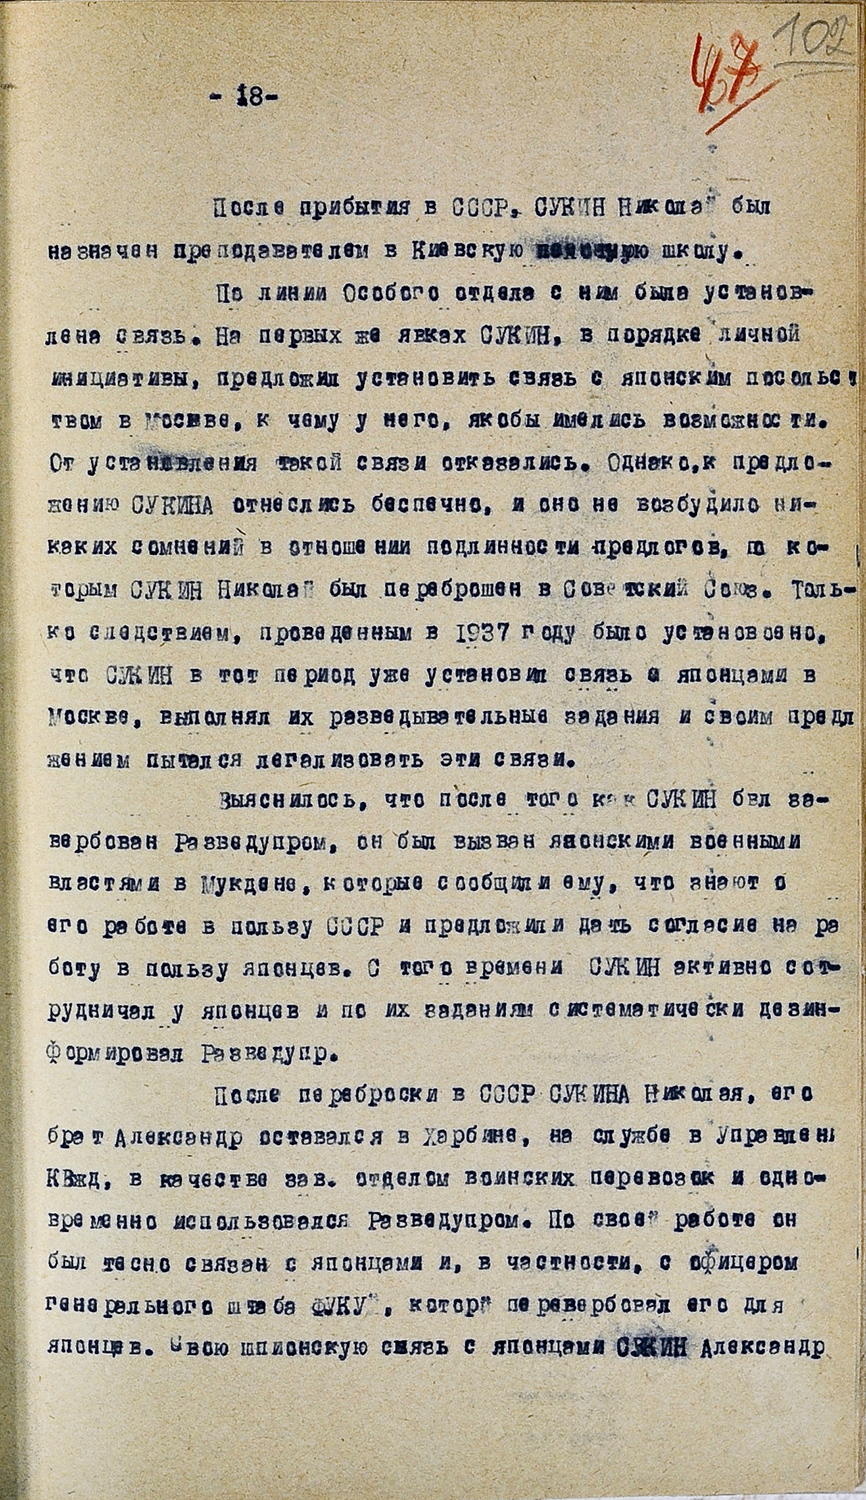 Сентябрь 1937 года. Письмо закрытое.